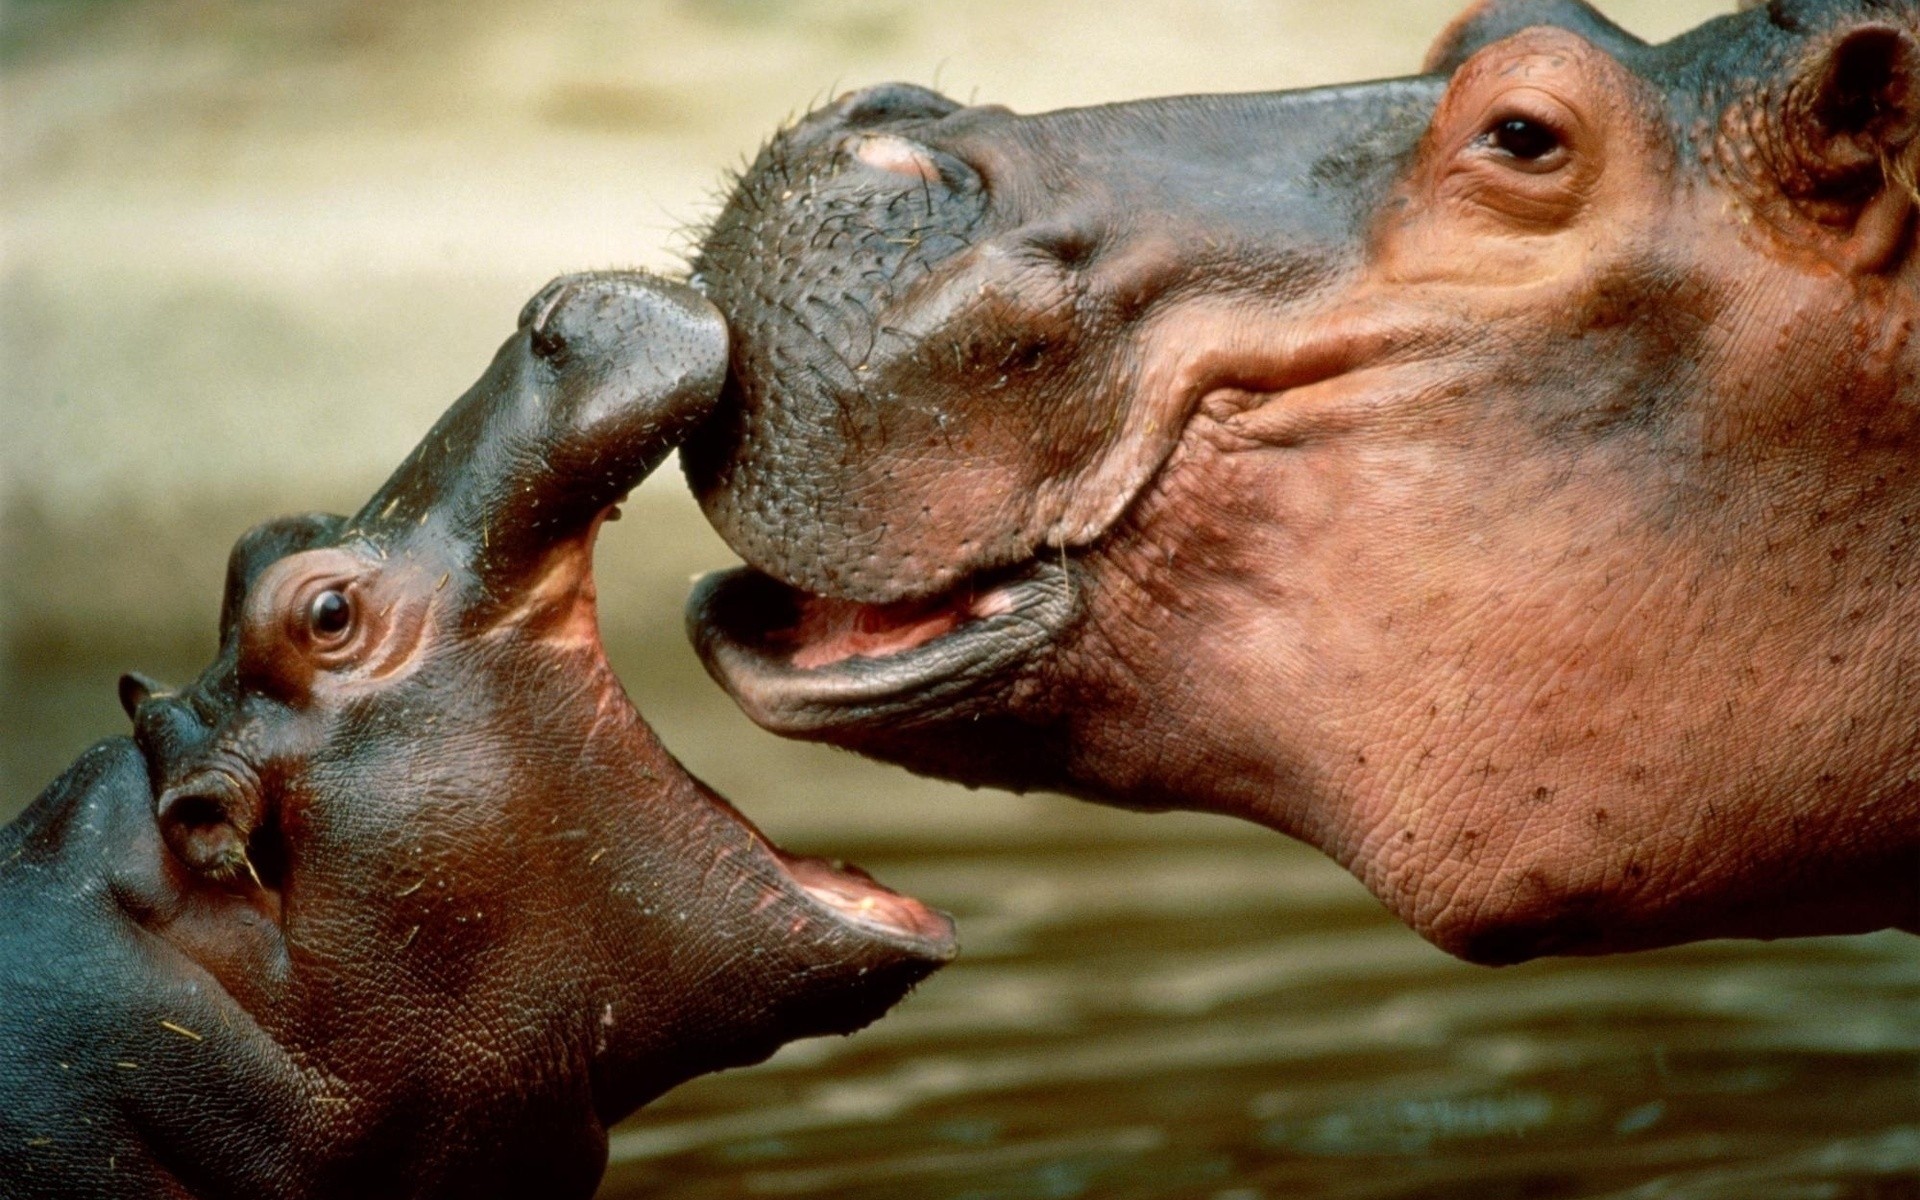 животные млекопитающее дикой природы гиппопотам зоопарк портрет тропический природа животное один мокрый воды лицо глава рот бегемотик